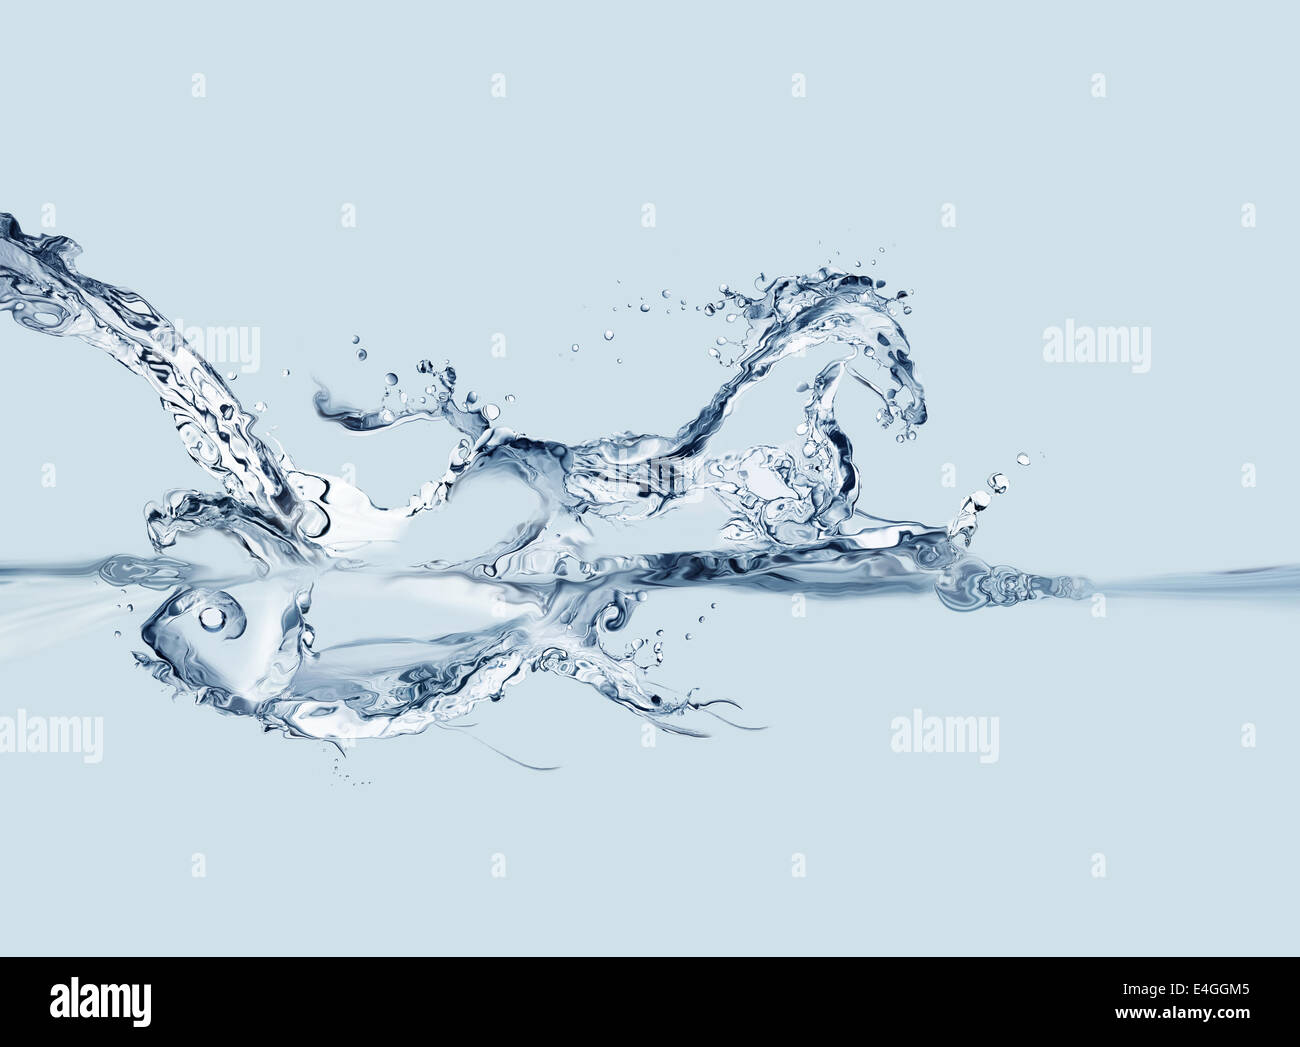 Une image conceptuelle où un débit d'eau forme un poisson sous l'eau et un cheval au-dessus de l'eau. Banque D'Images